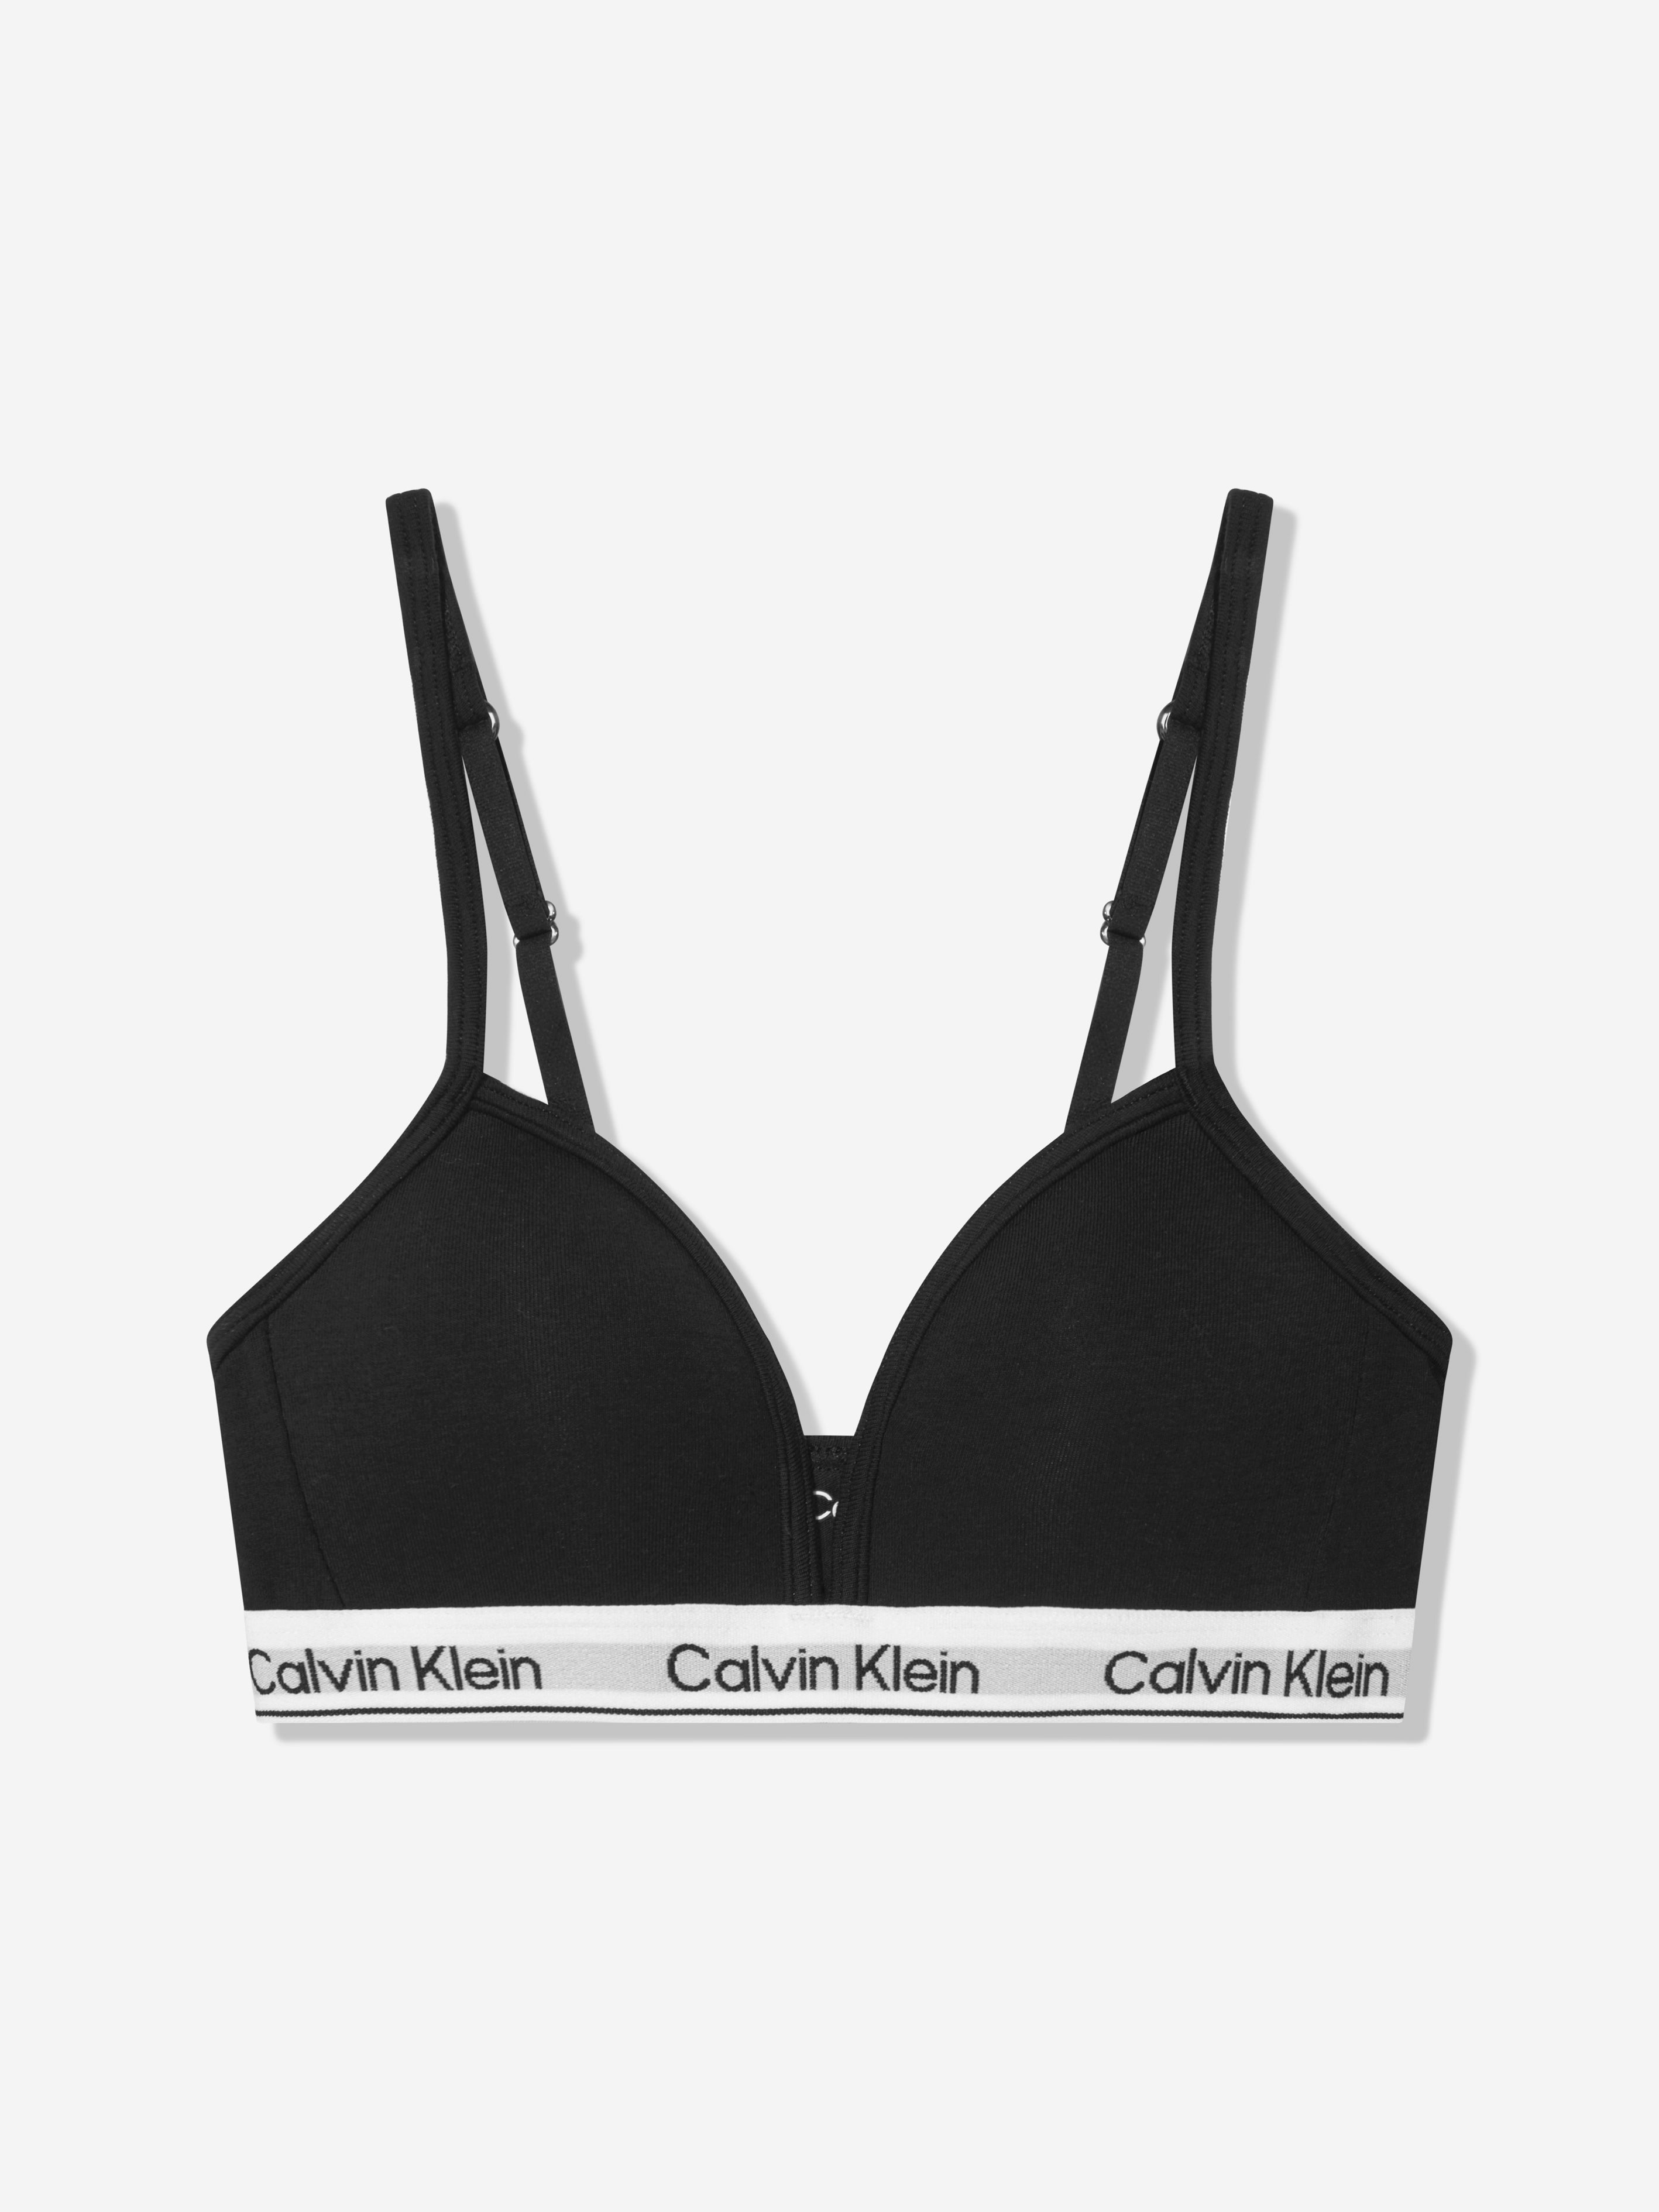 Calvin Klein Underwear Kids' Girls Triangle Bra In Black